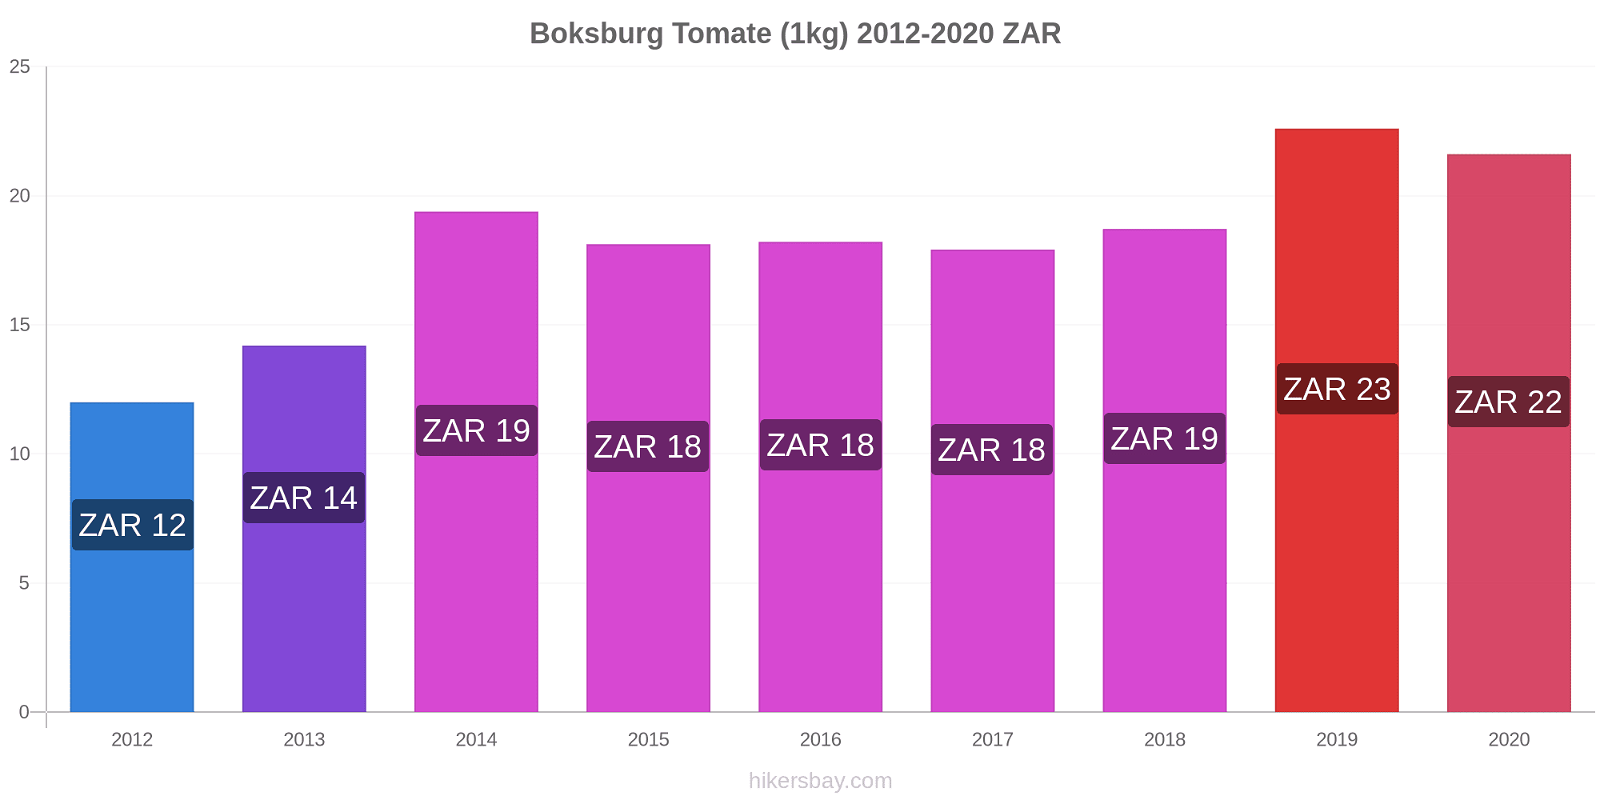 Boksburg variação de preço Tomate (1kg) hikersbay.com